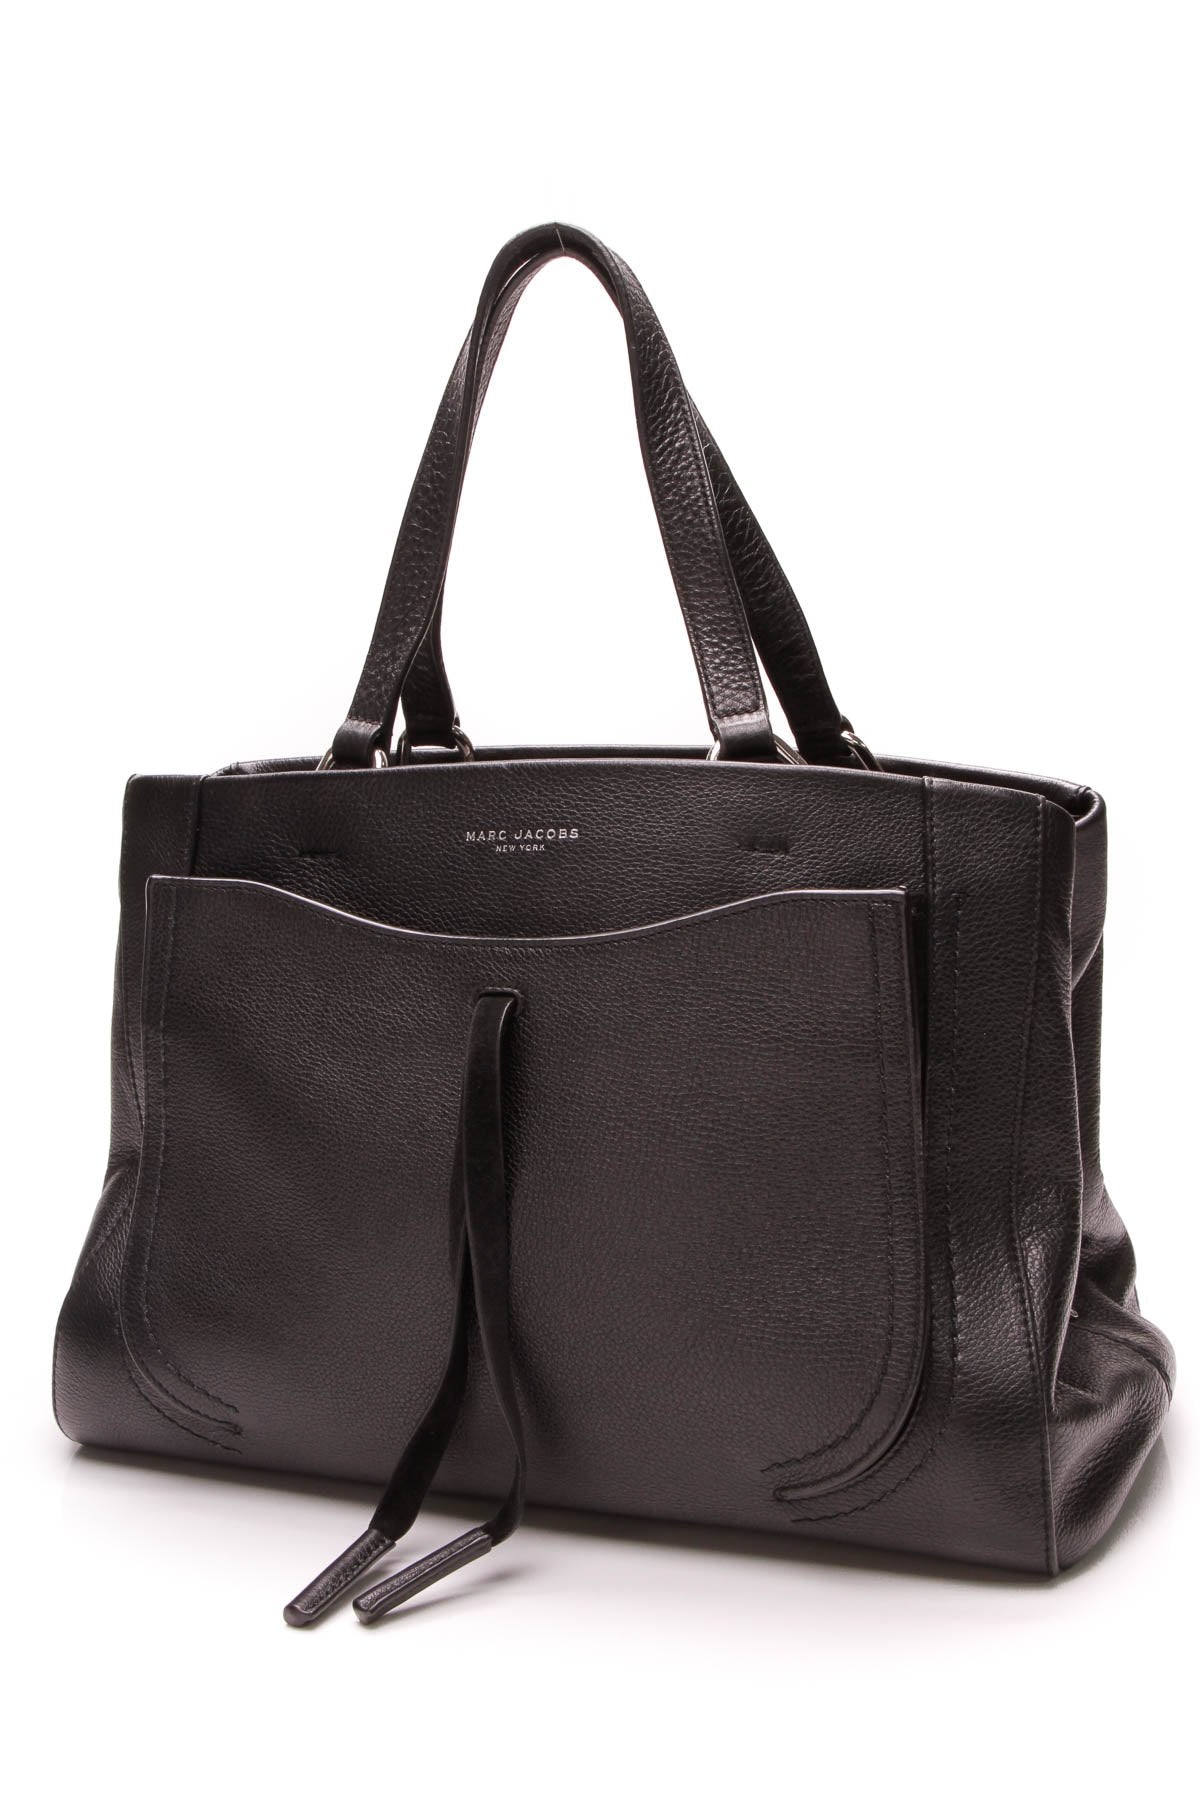 Maverick Tote Bag - Black Leather